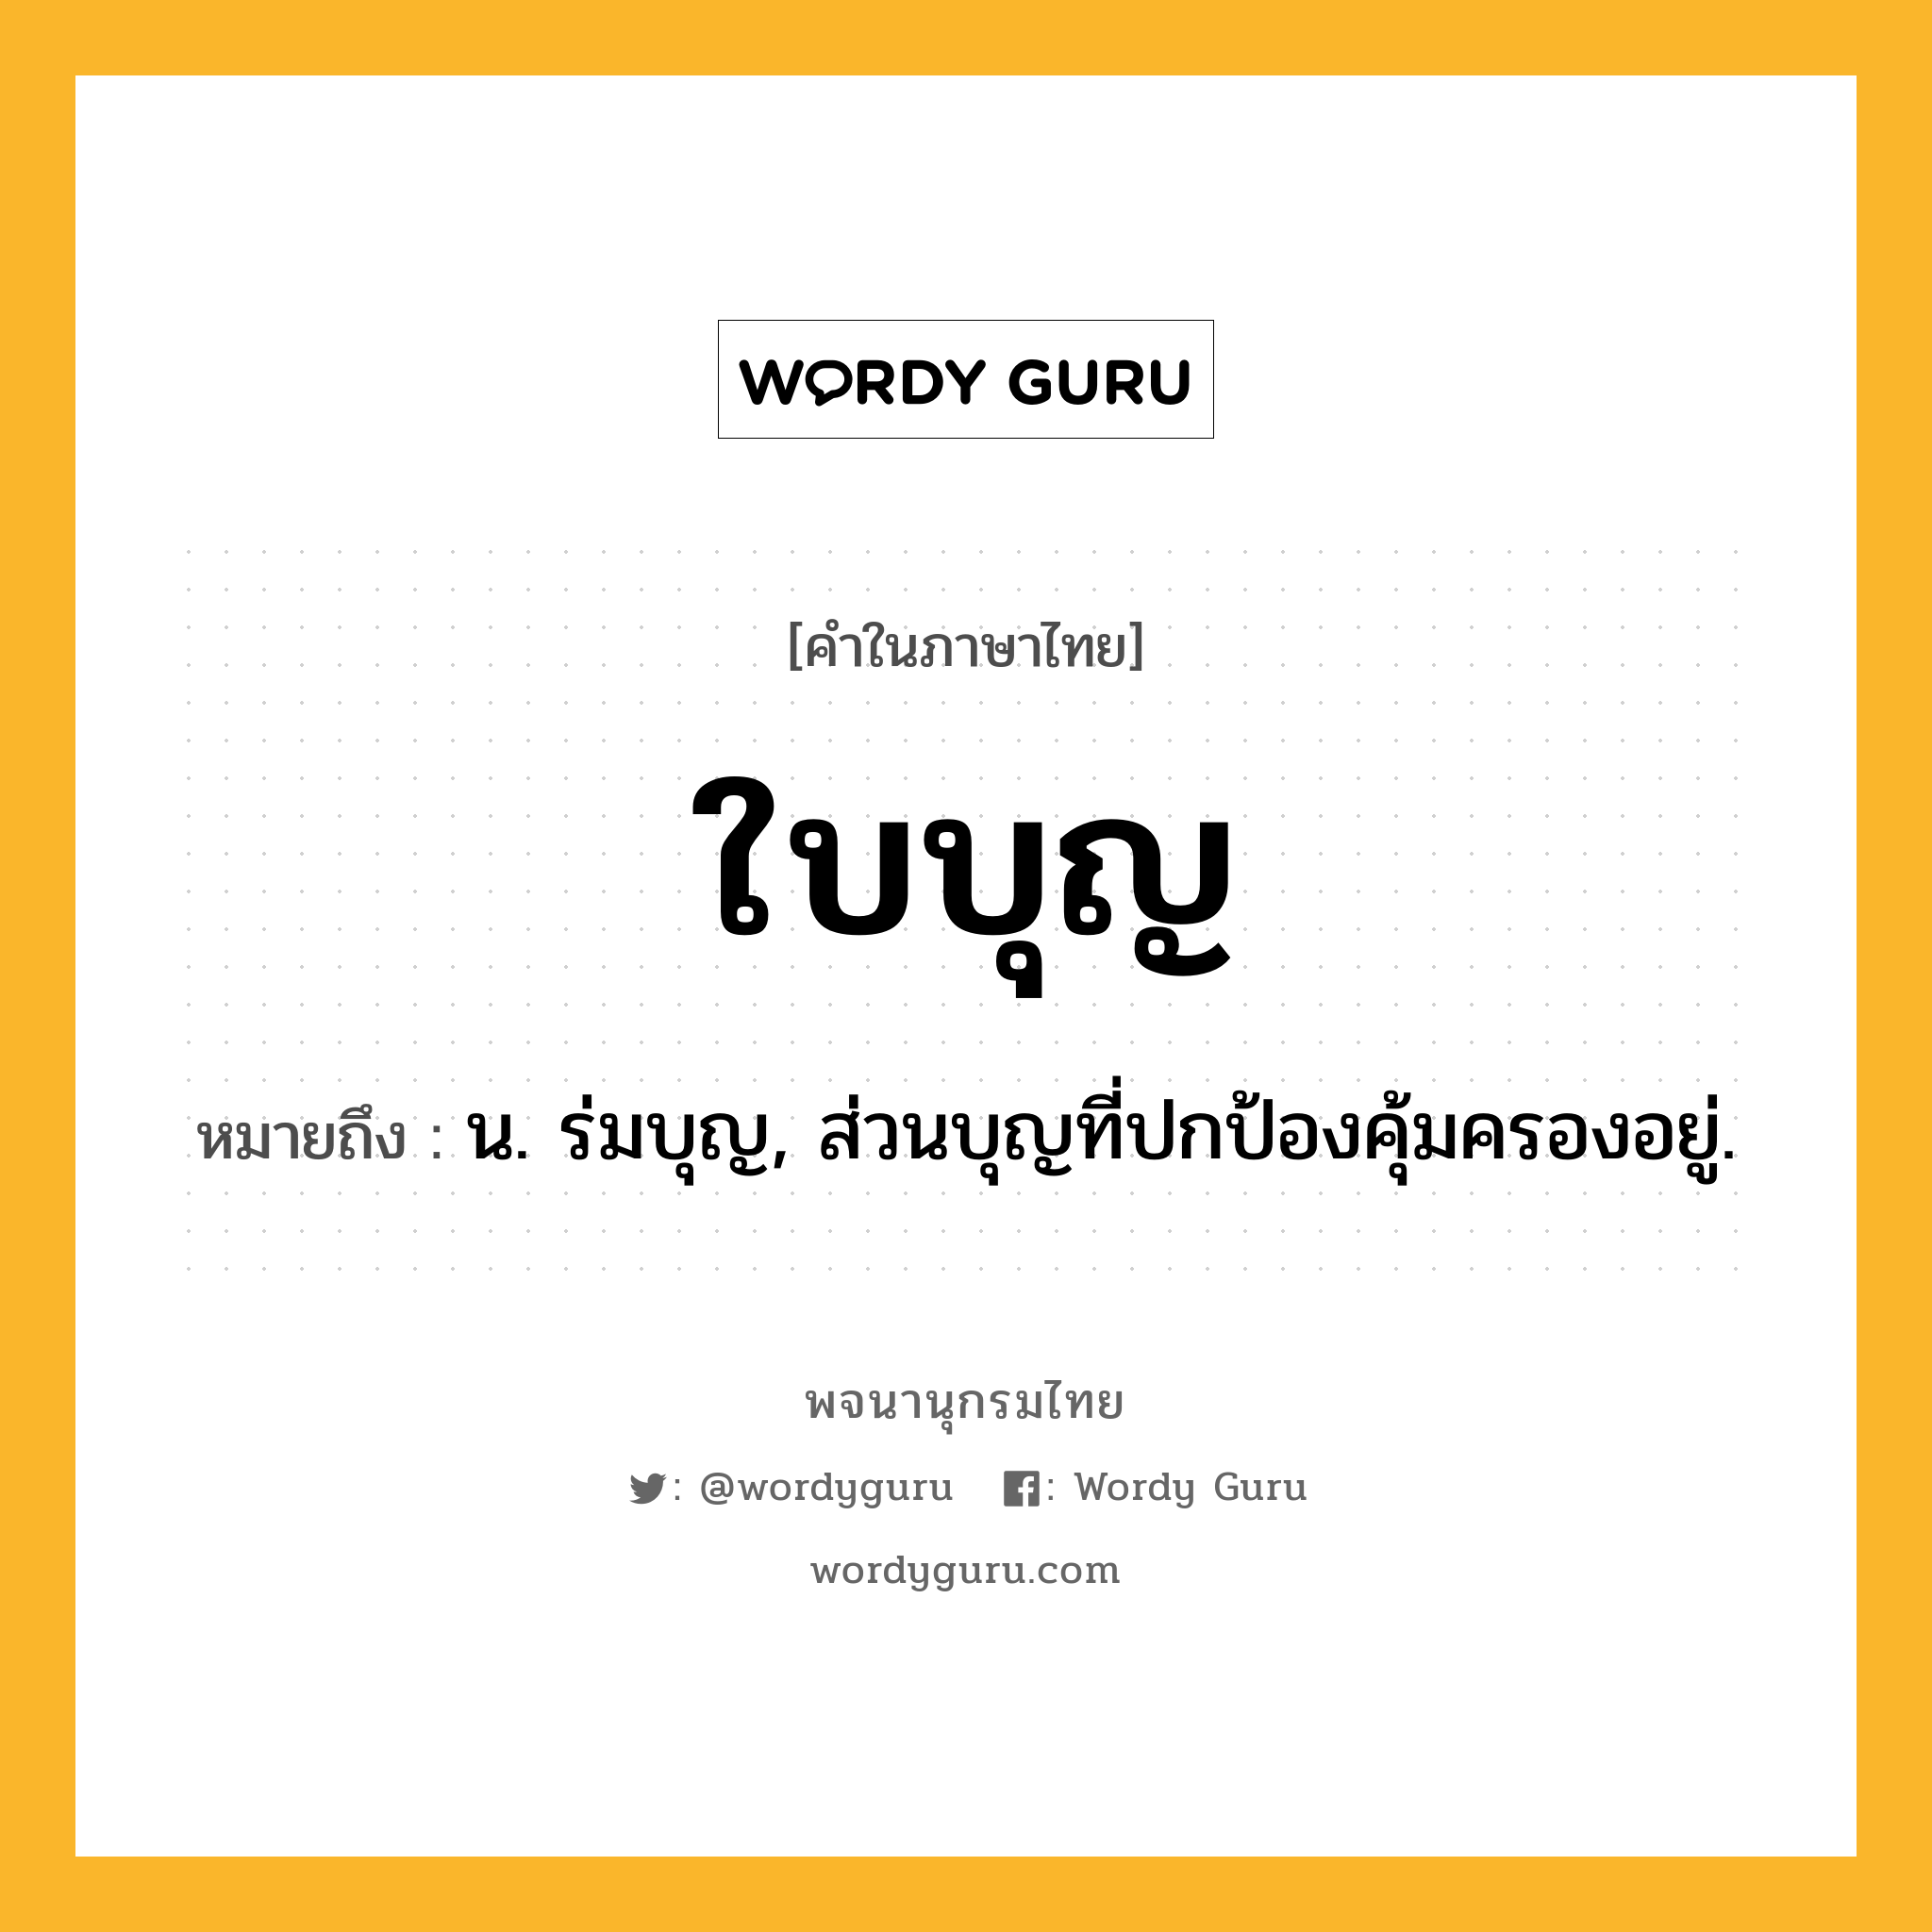 ใบบุญ หมายถึงอะไร?, คำในภาษาไทย ใบบุญ หมายถึง น. ร่มบุญ, ส่วนบุญที่ปกป้องคุ้มครองอยู่.